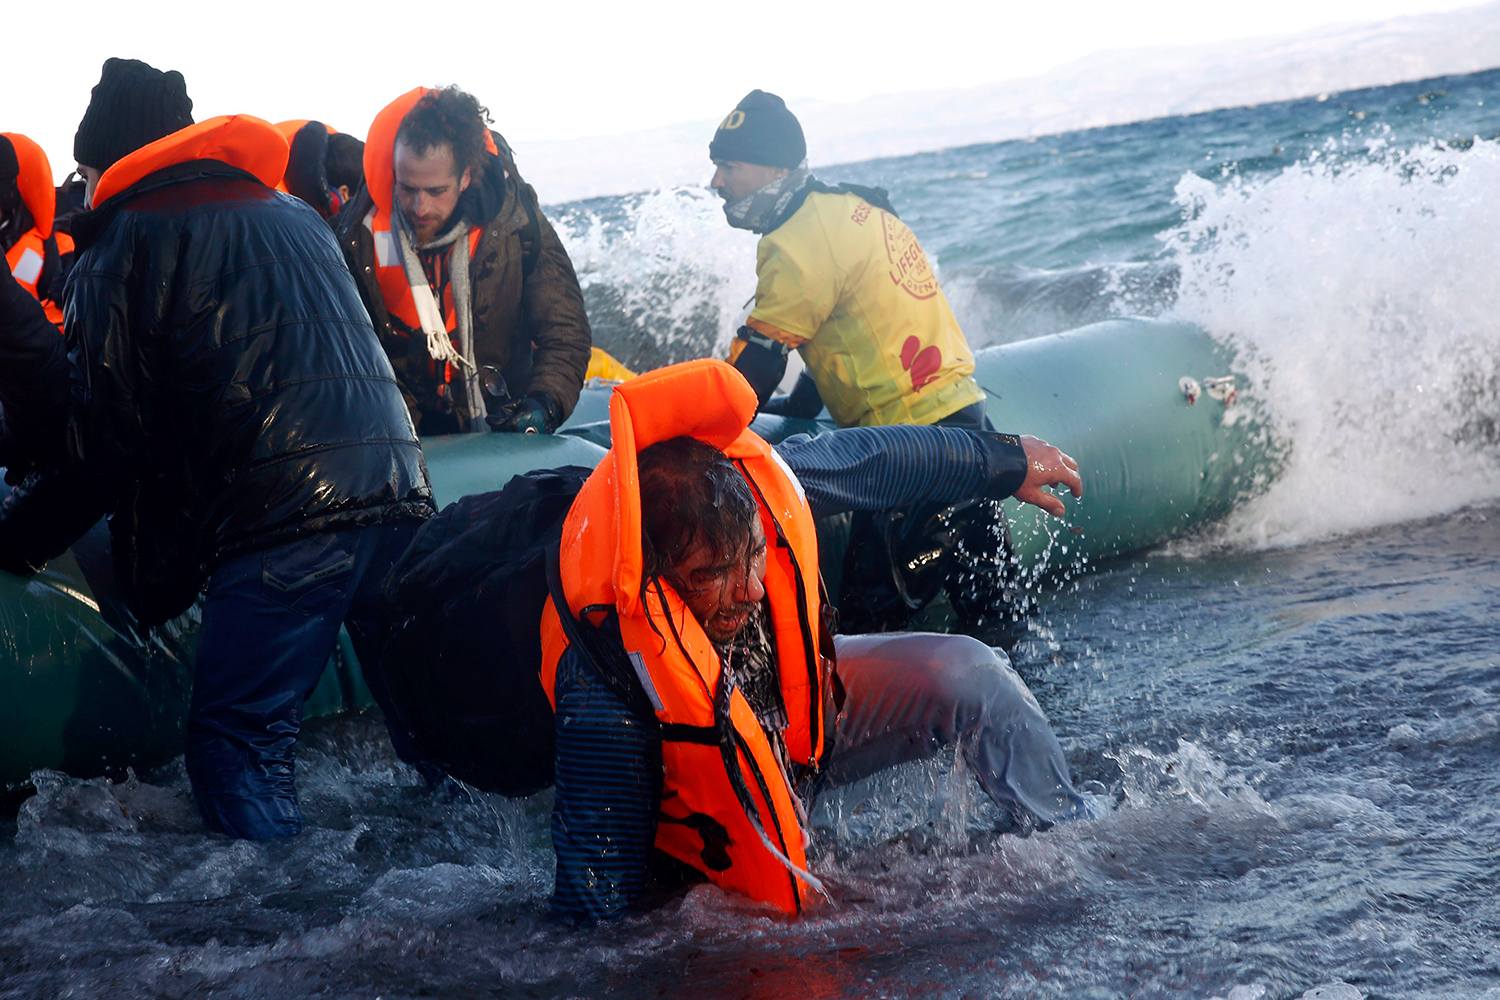 40 muertos, entre ellos 17 niños, al naufragar dos embarcaciones con refugiados frente a las costas griegas